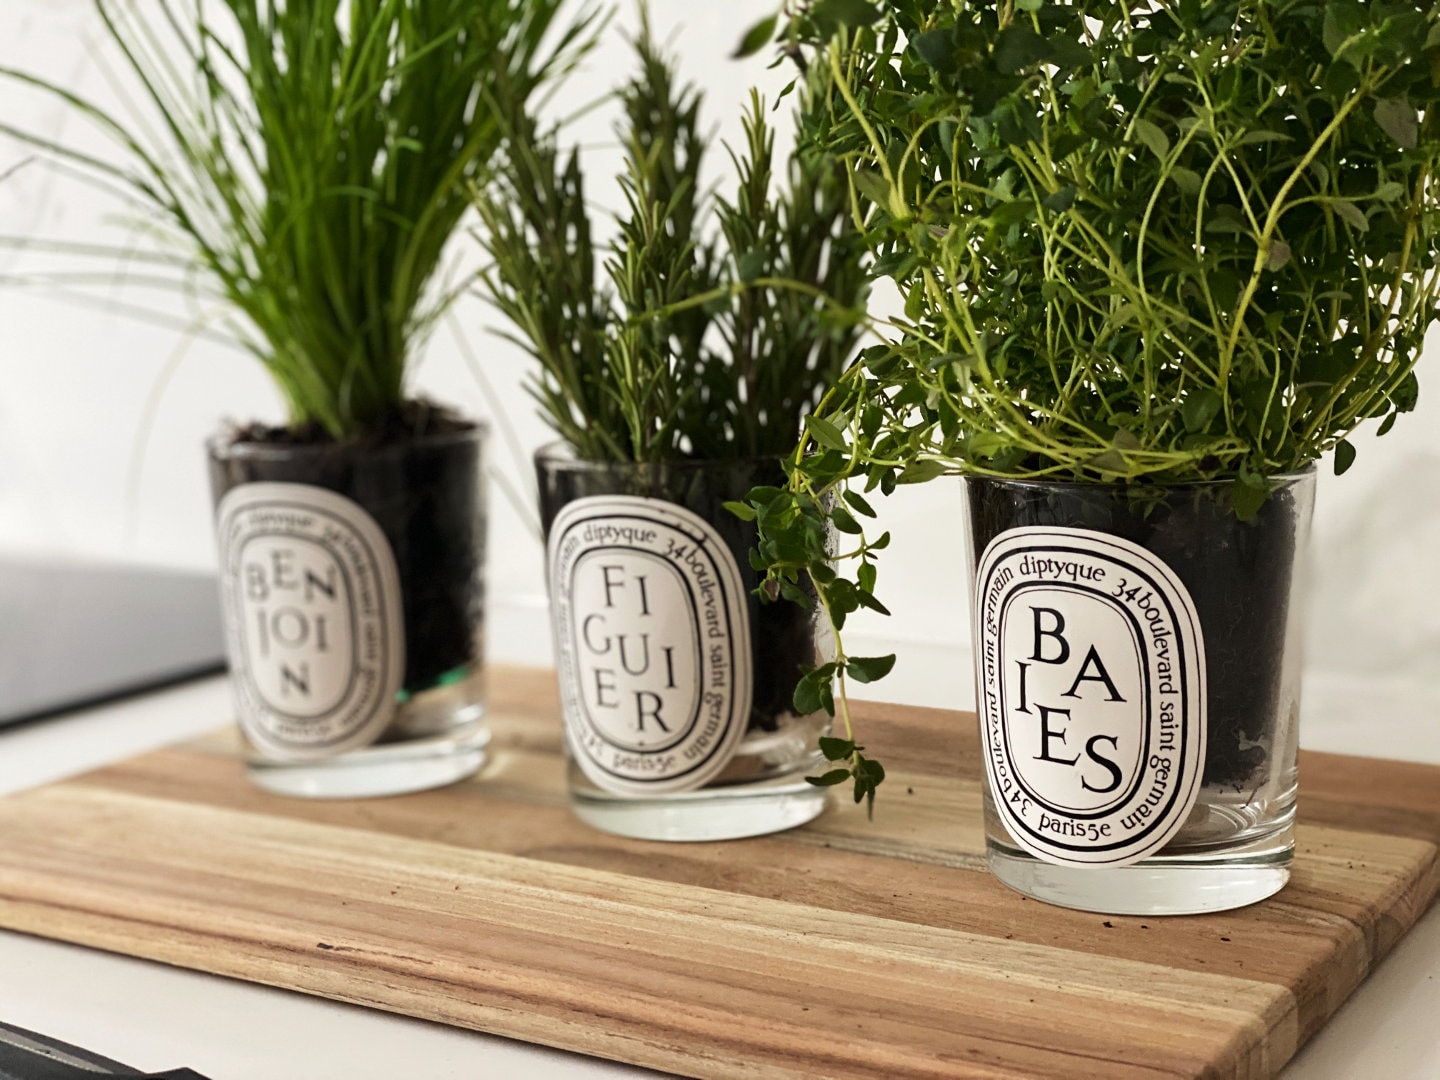 ARTE Pot auto-arrosant pour plantes d'intérieur de Santino®, taille: 0,6l,  couleur: blanc - noir